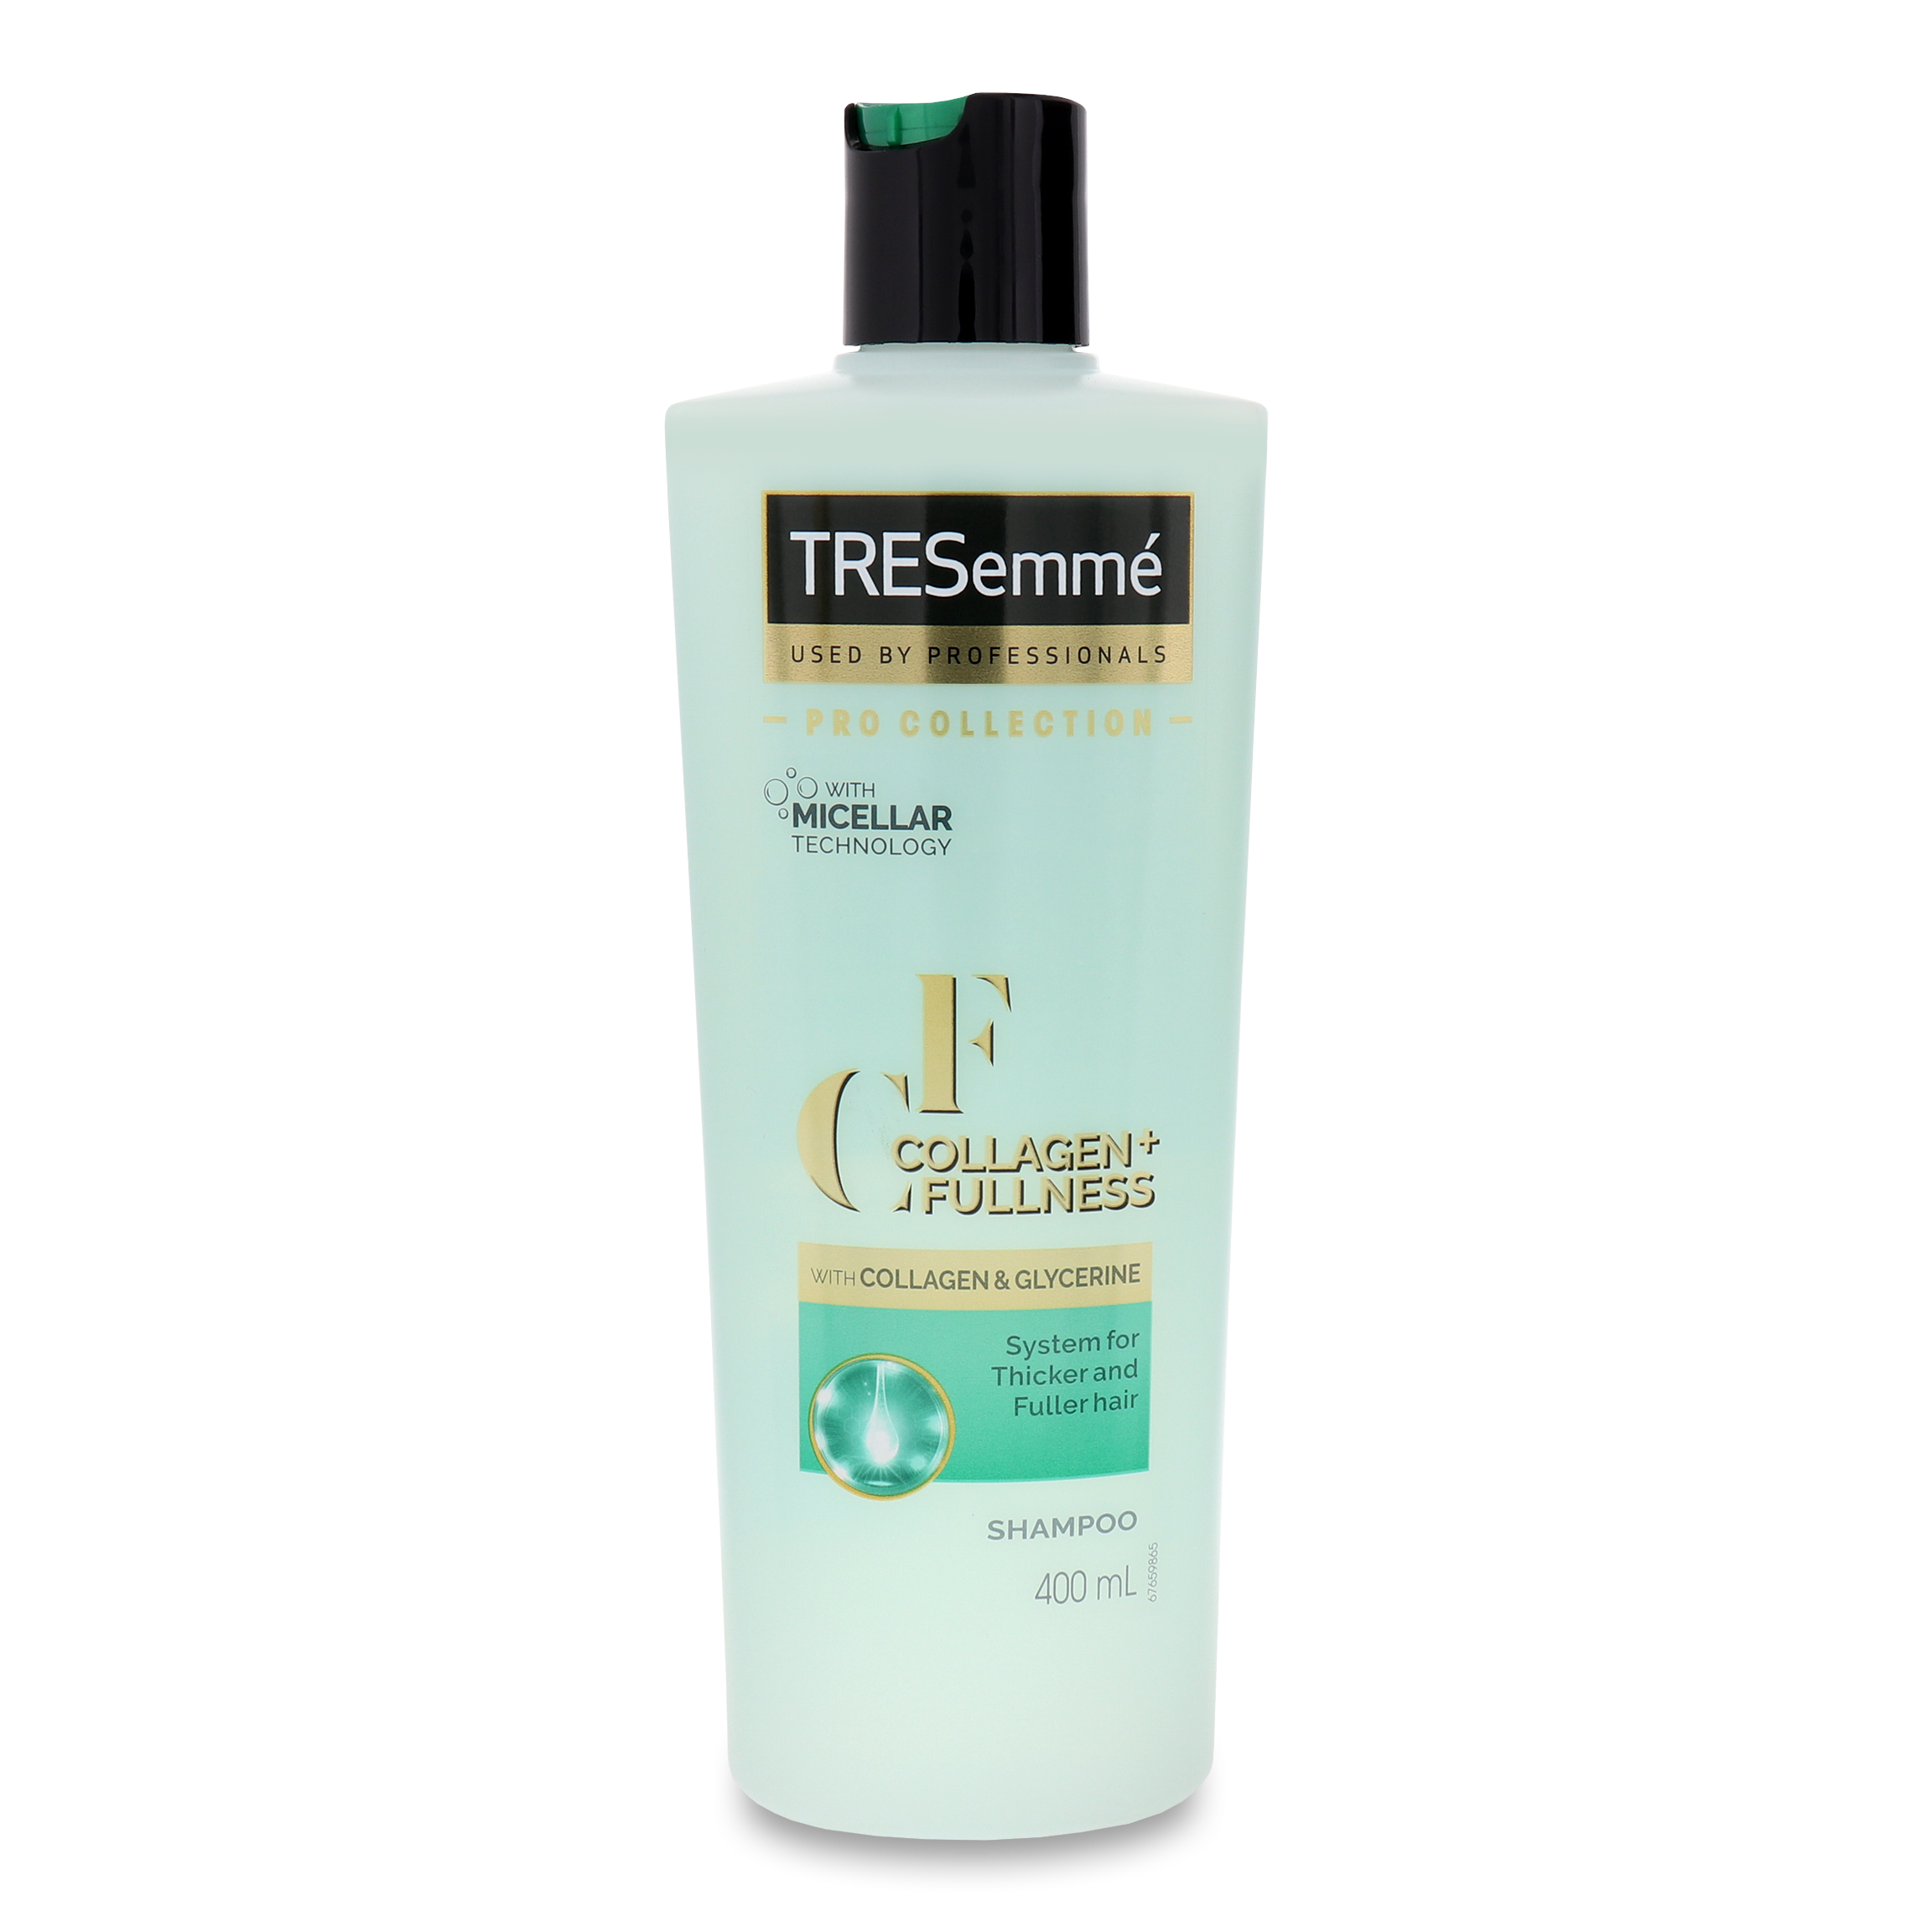 TRESemme Collagen+Fullnessl Volume Shampoo 400ml